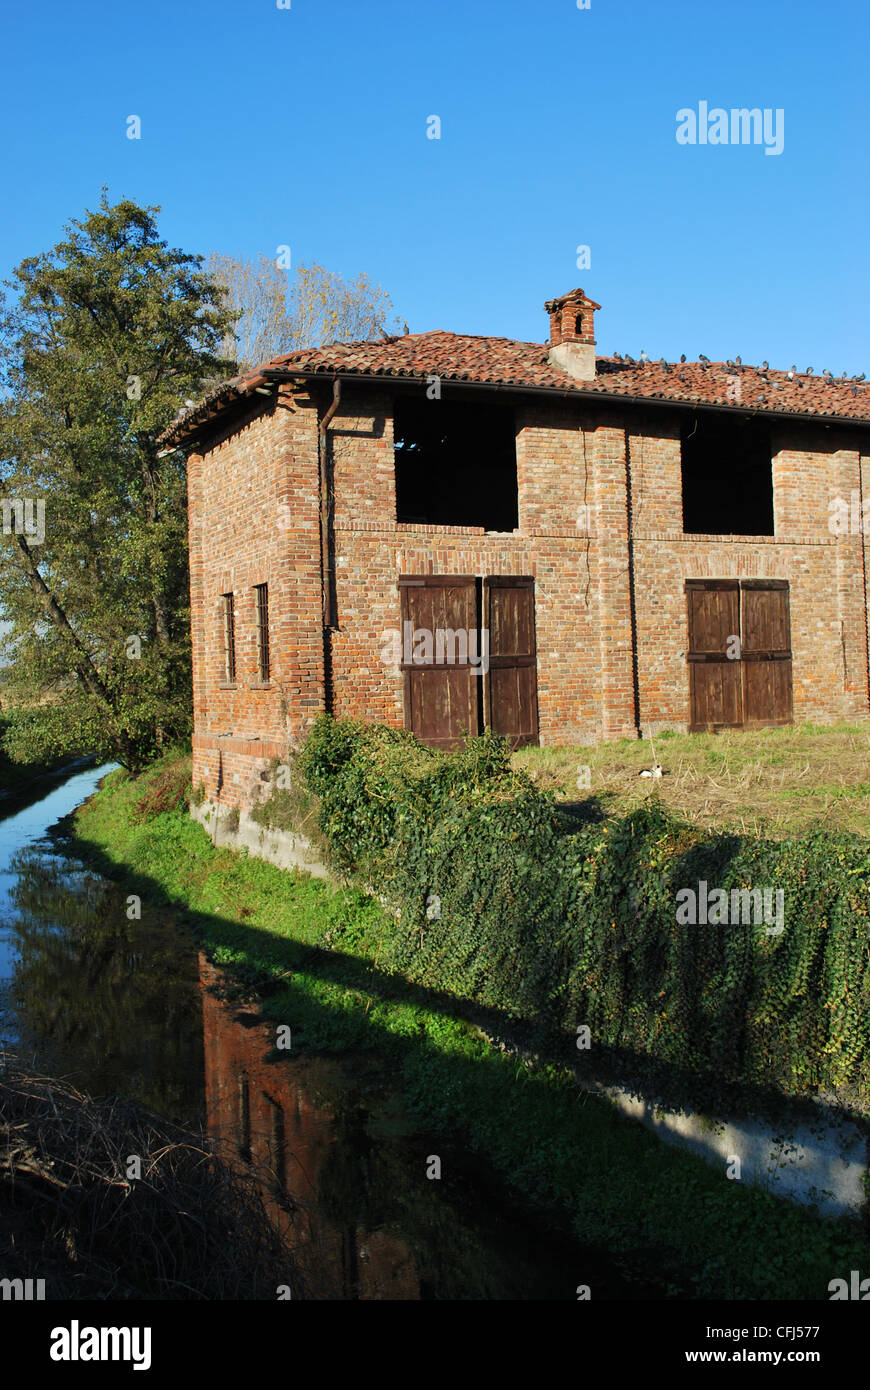 Vecchio abbandonato county house su un canale in una giornata di sole, Italia Foto Stock